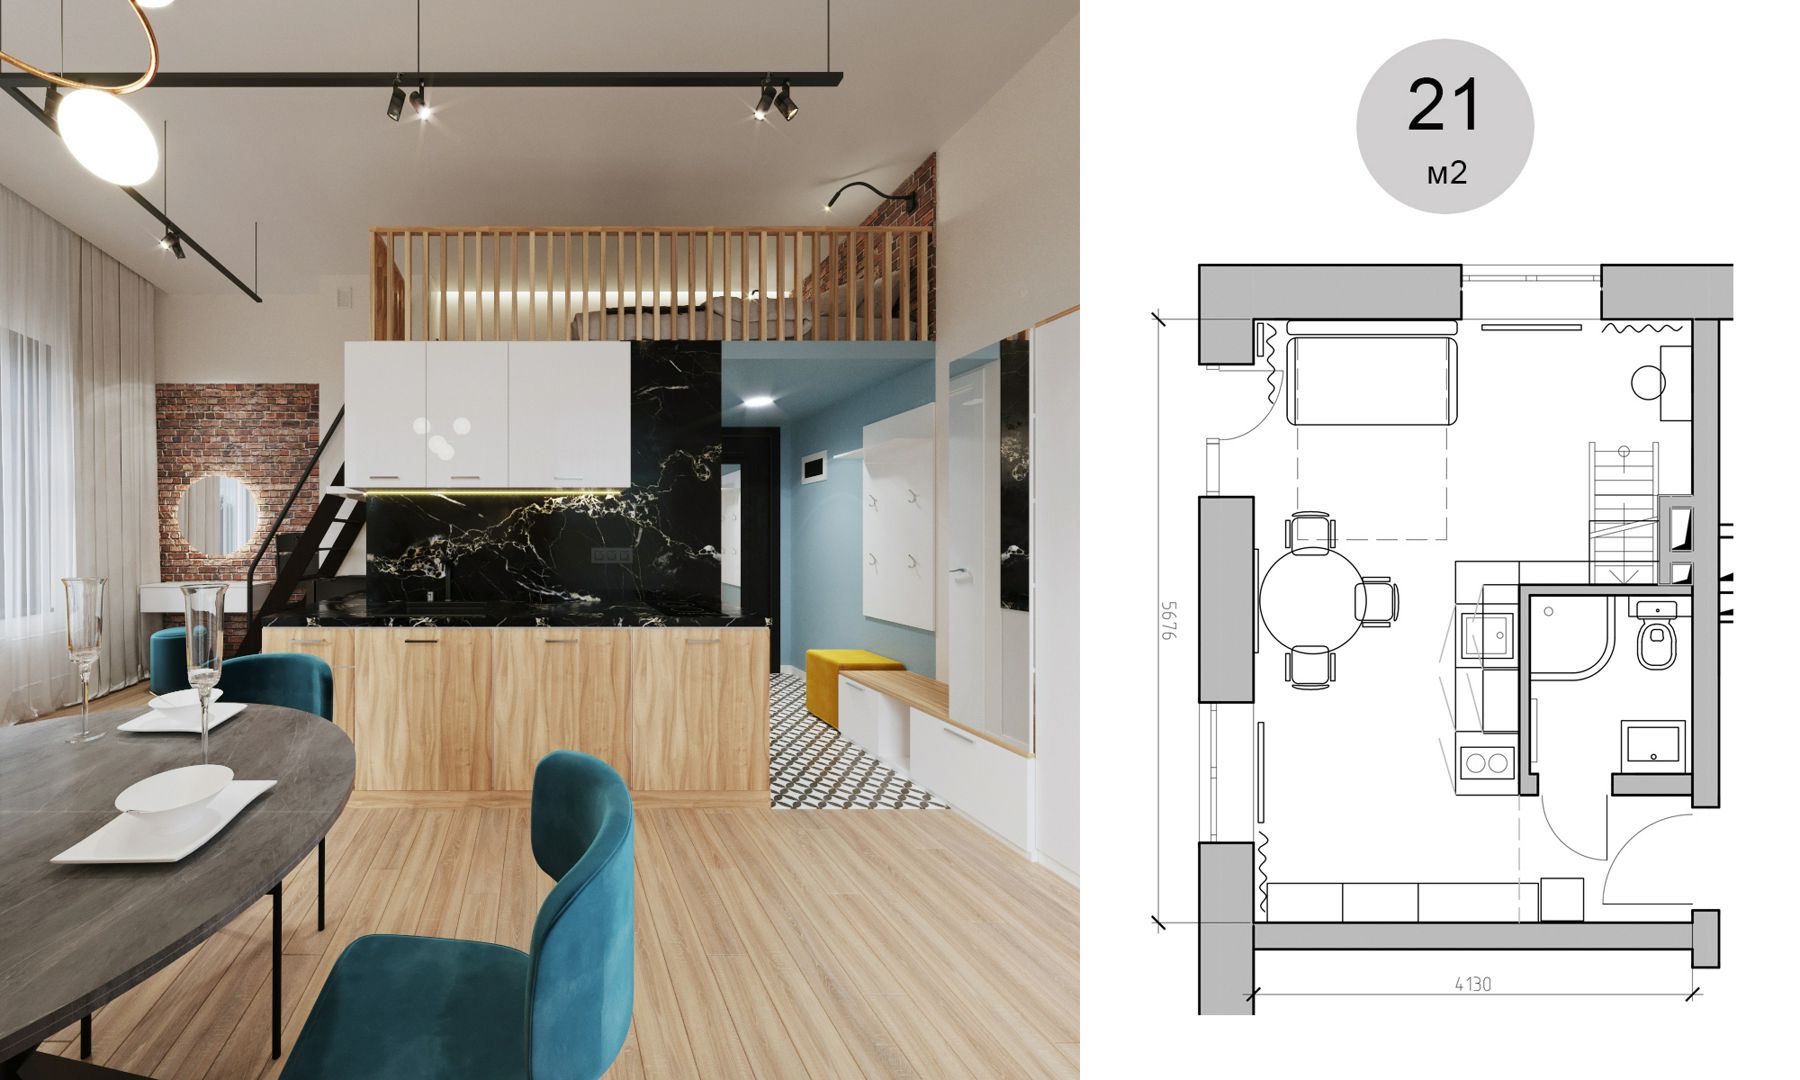 Дизайн проект интерьера квартиры студии апартаментов 21м2 подробный с чертежами, товарной ведомостью